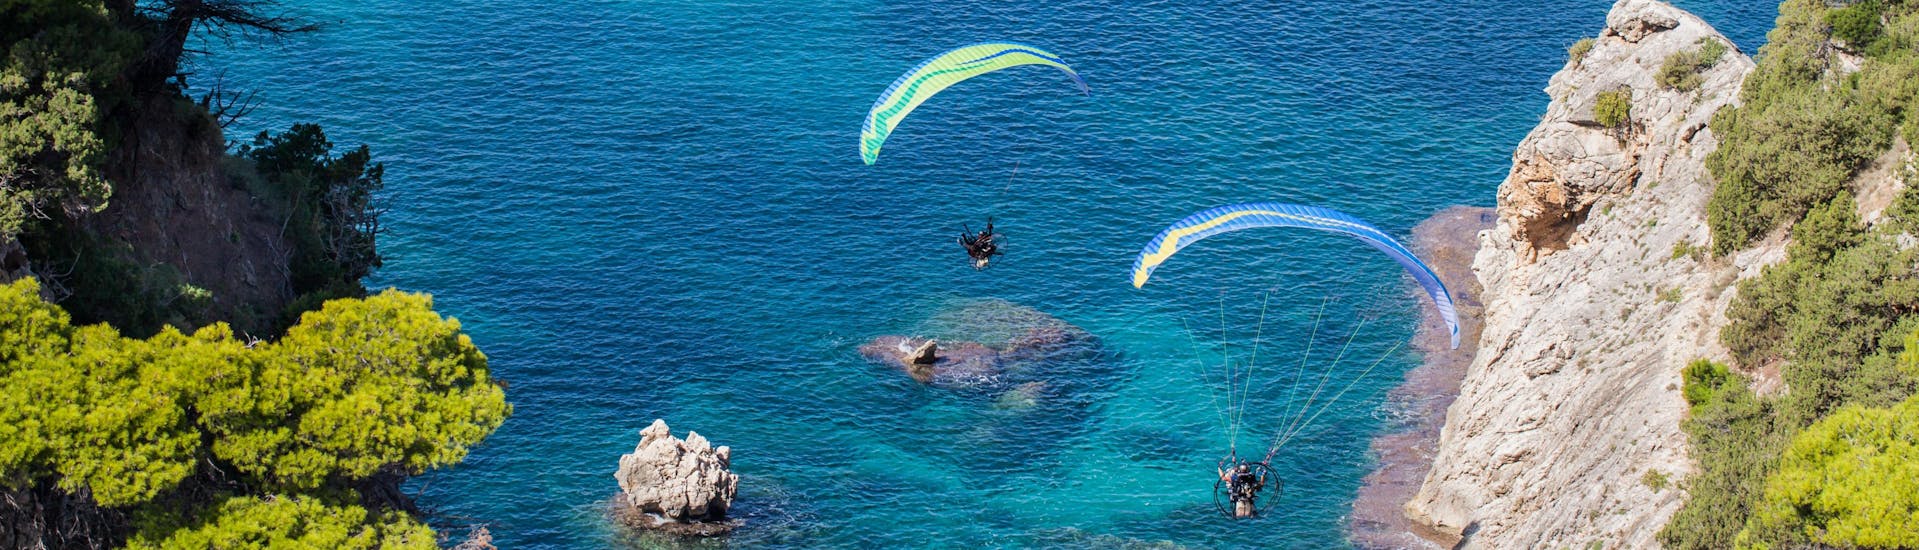 Kreta: Een tandemvlucht vindt plaats in een van de hotspots voor paragliding.